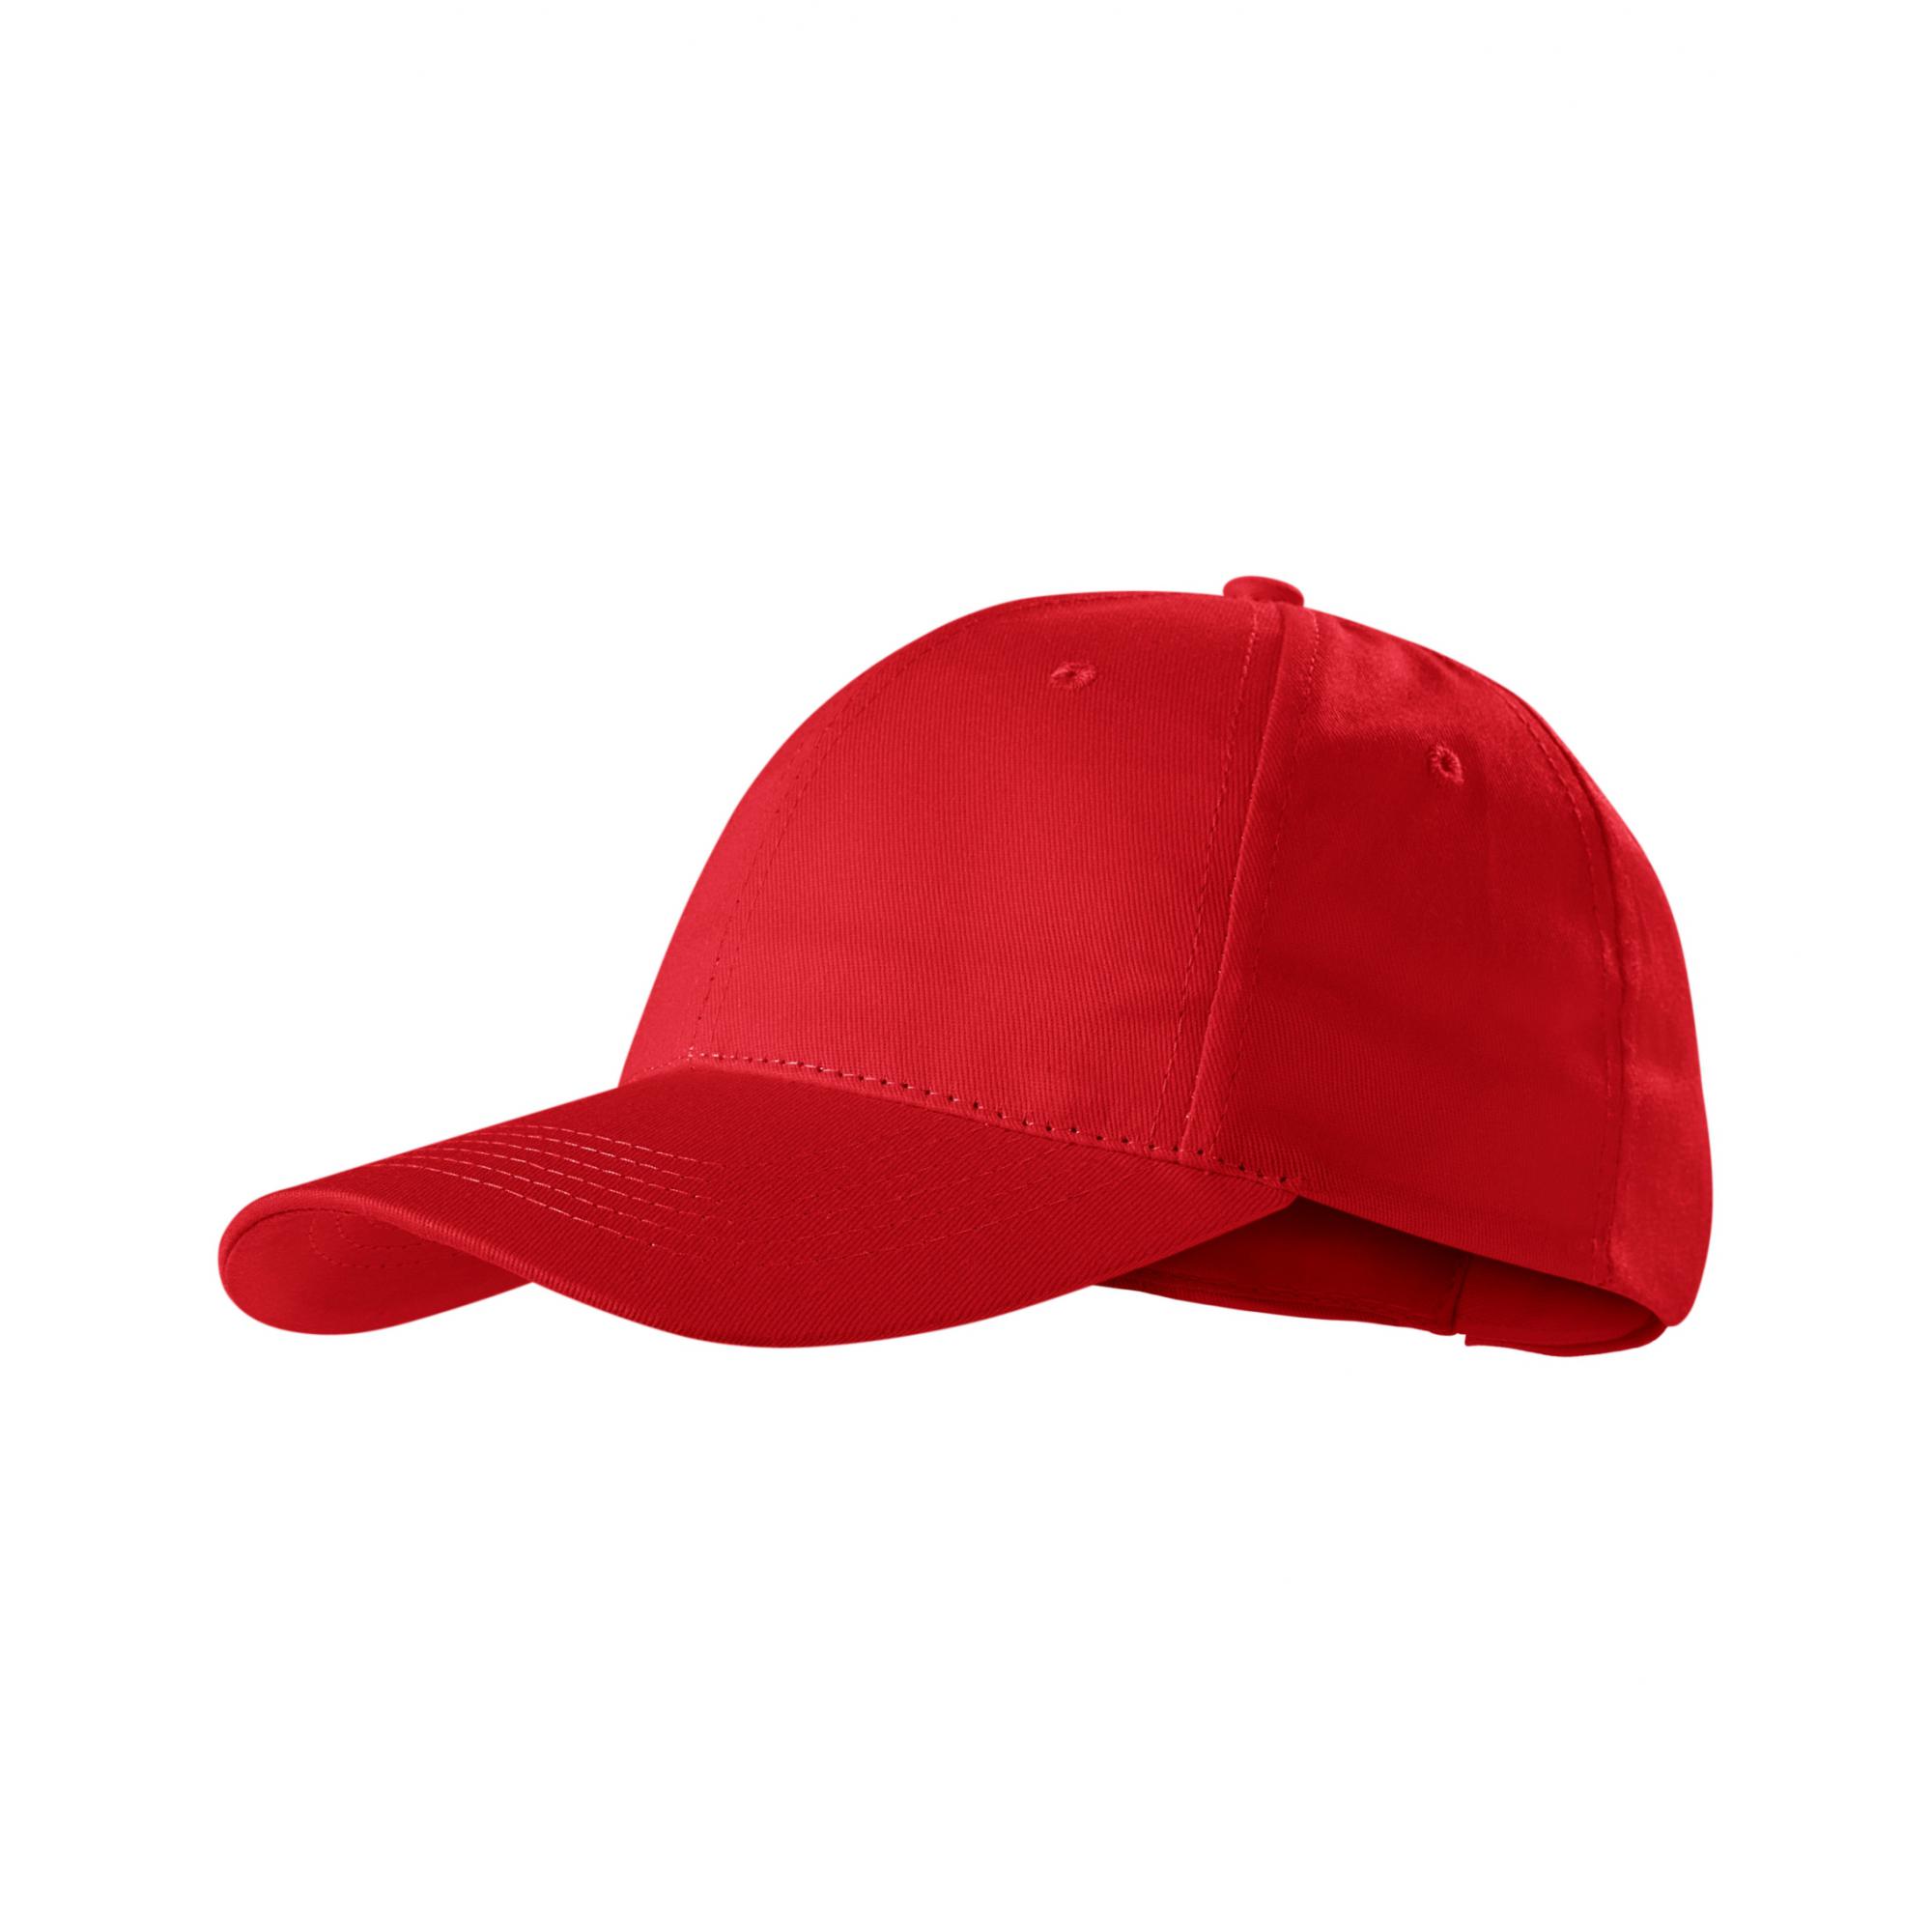 Şapcă unisex Sunshine P31 Rosu Marime universala